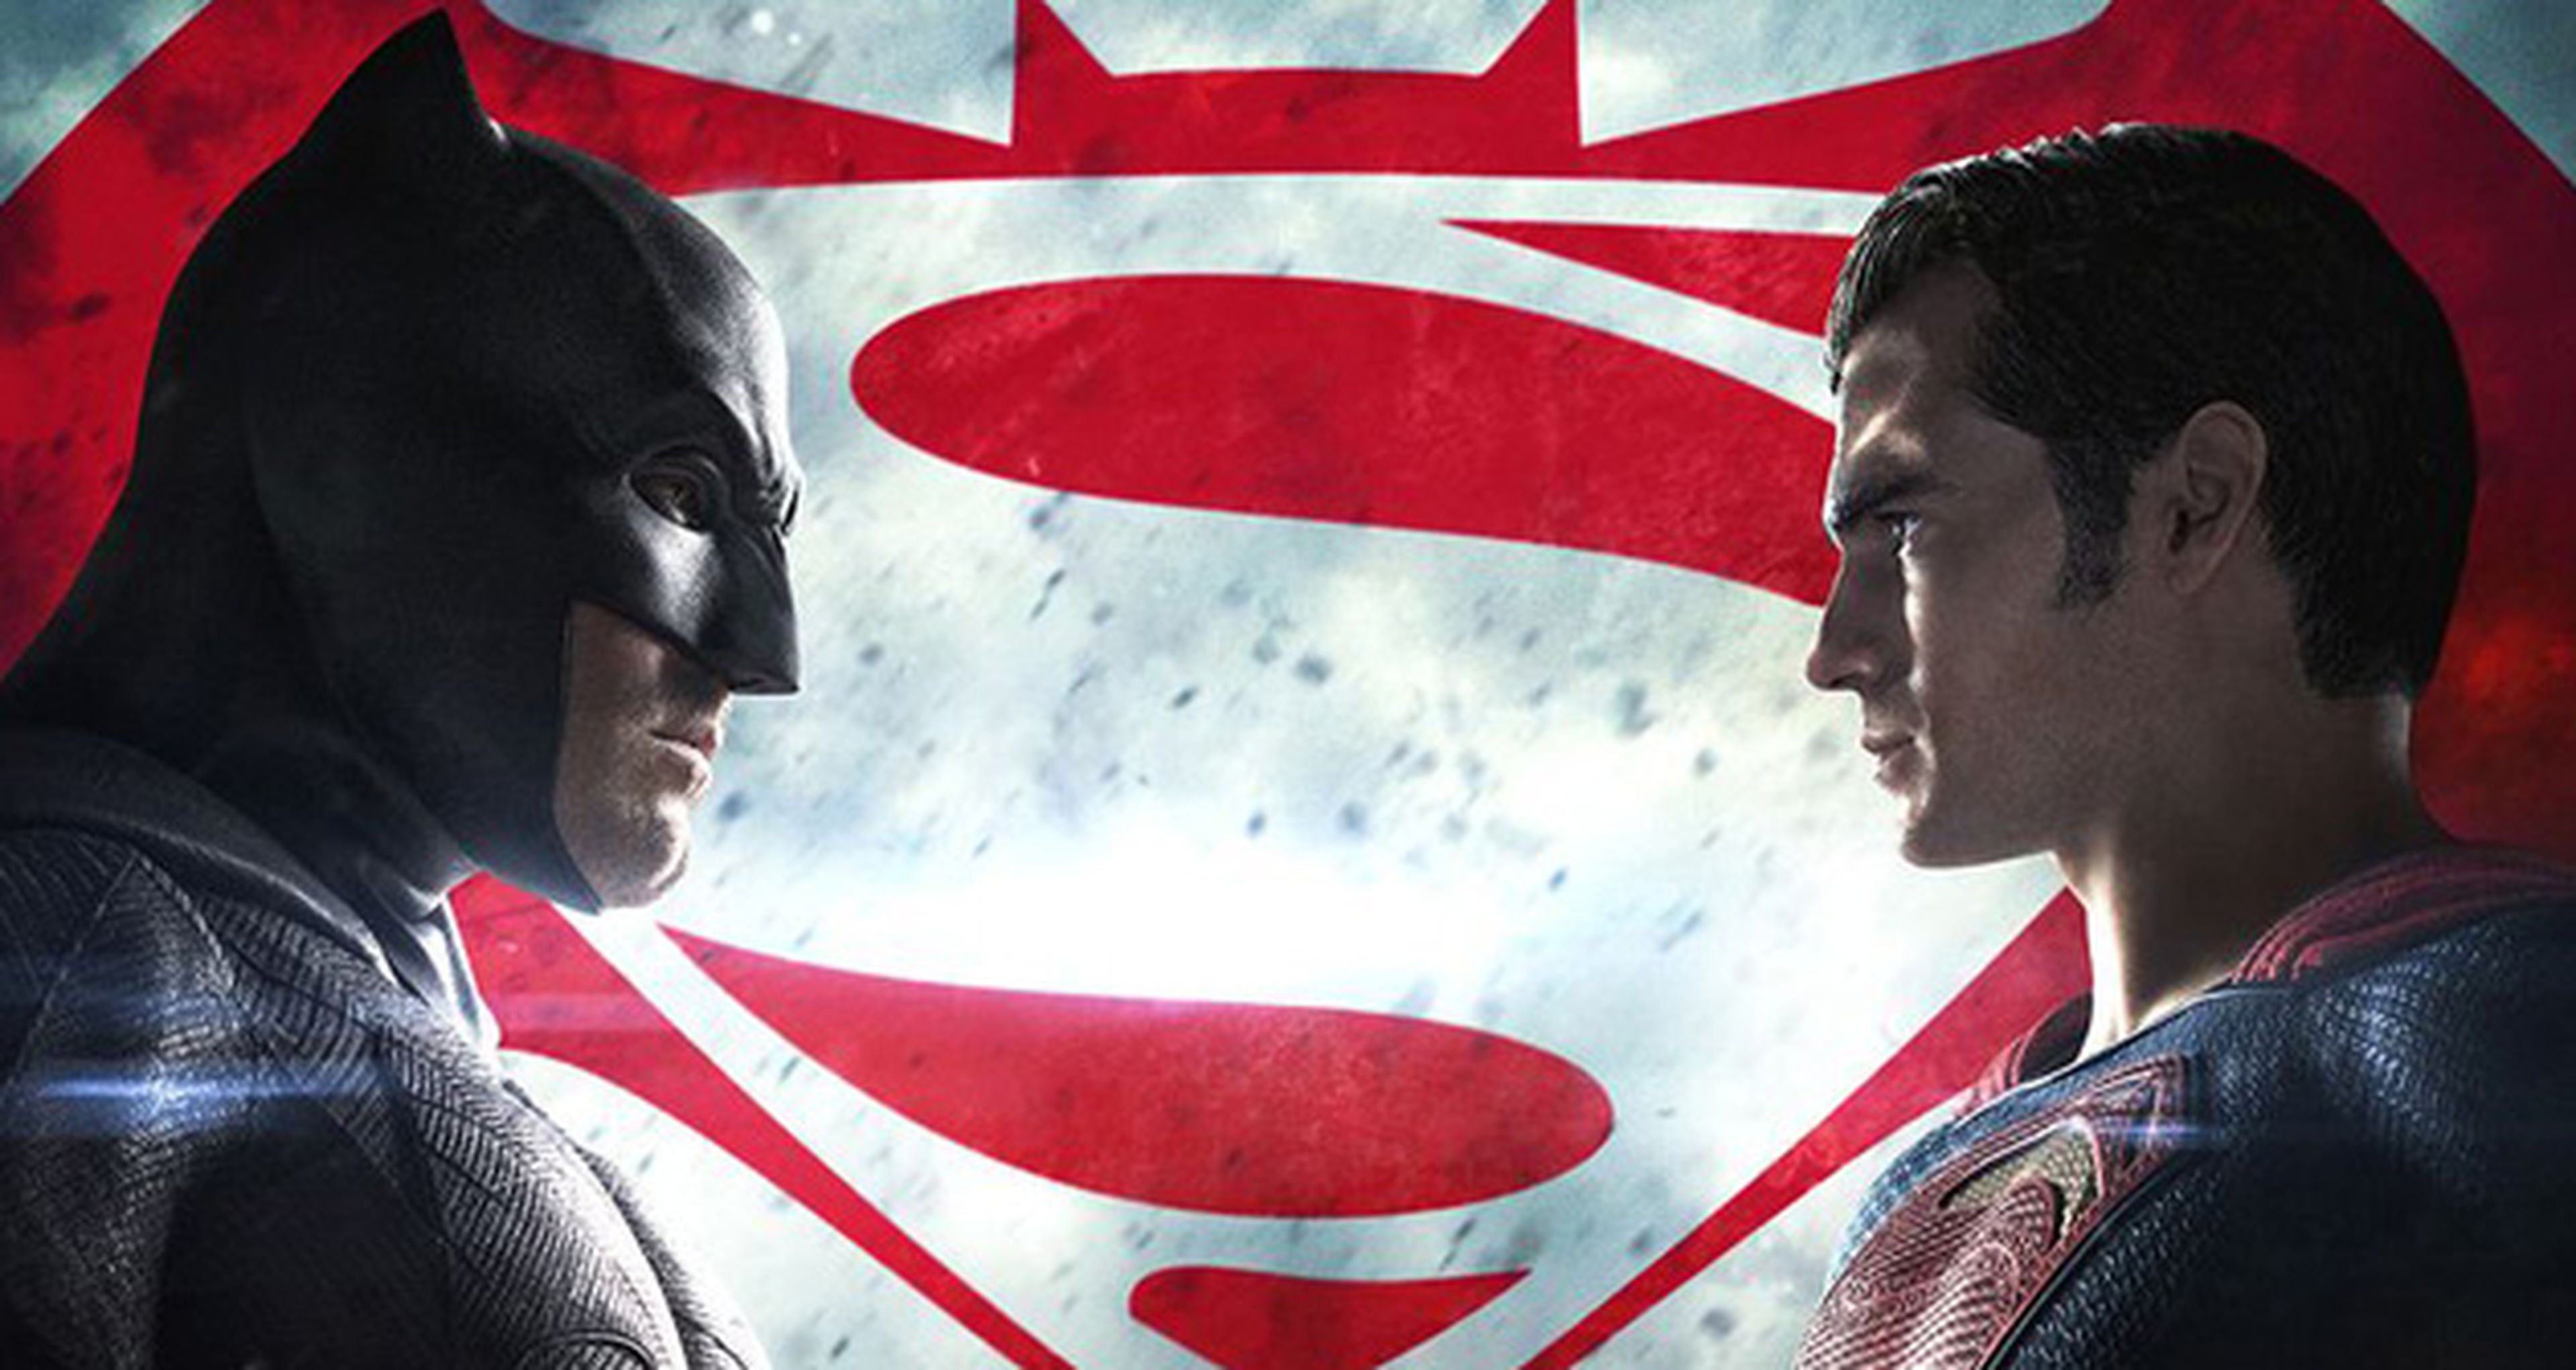 Batman v. Superman – Warner Bros se replantea futuros proyectos tras su fracaso